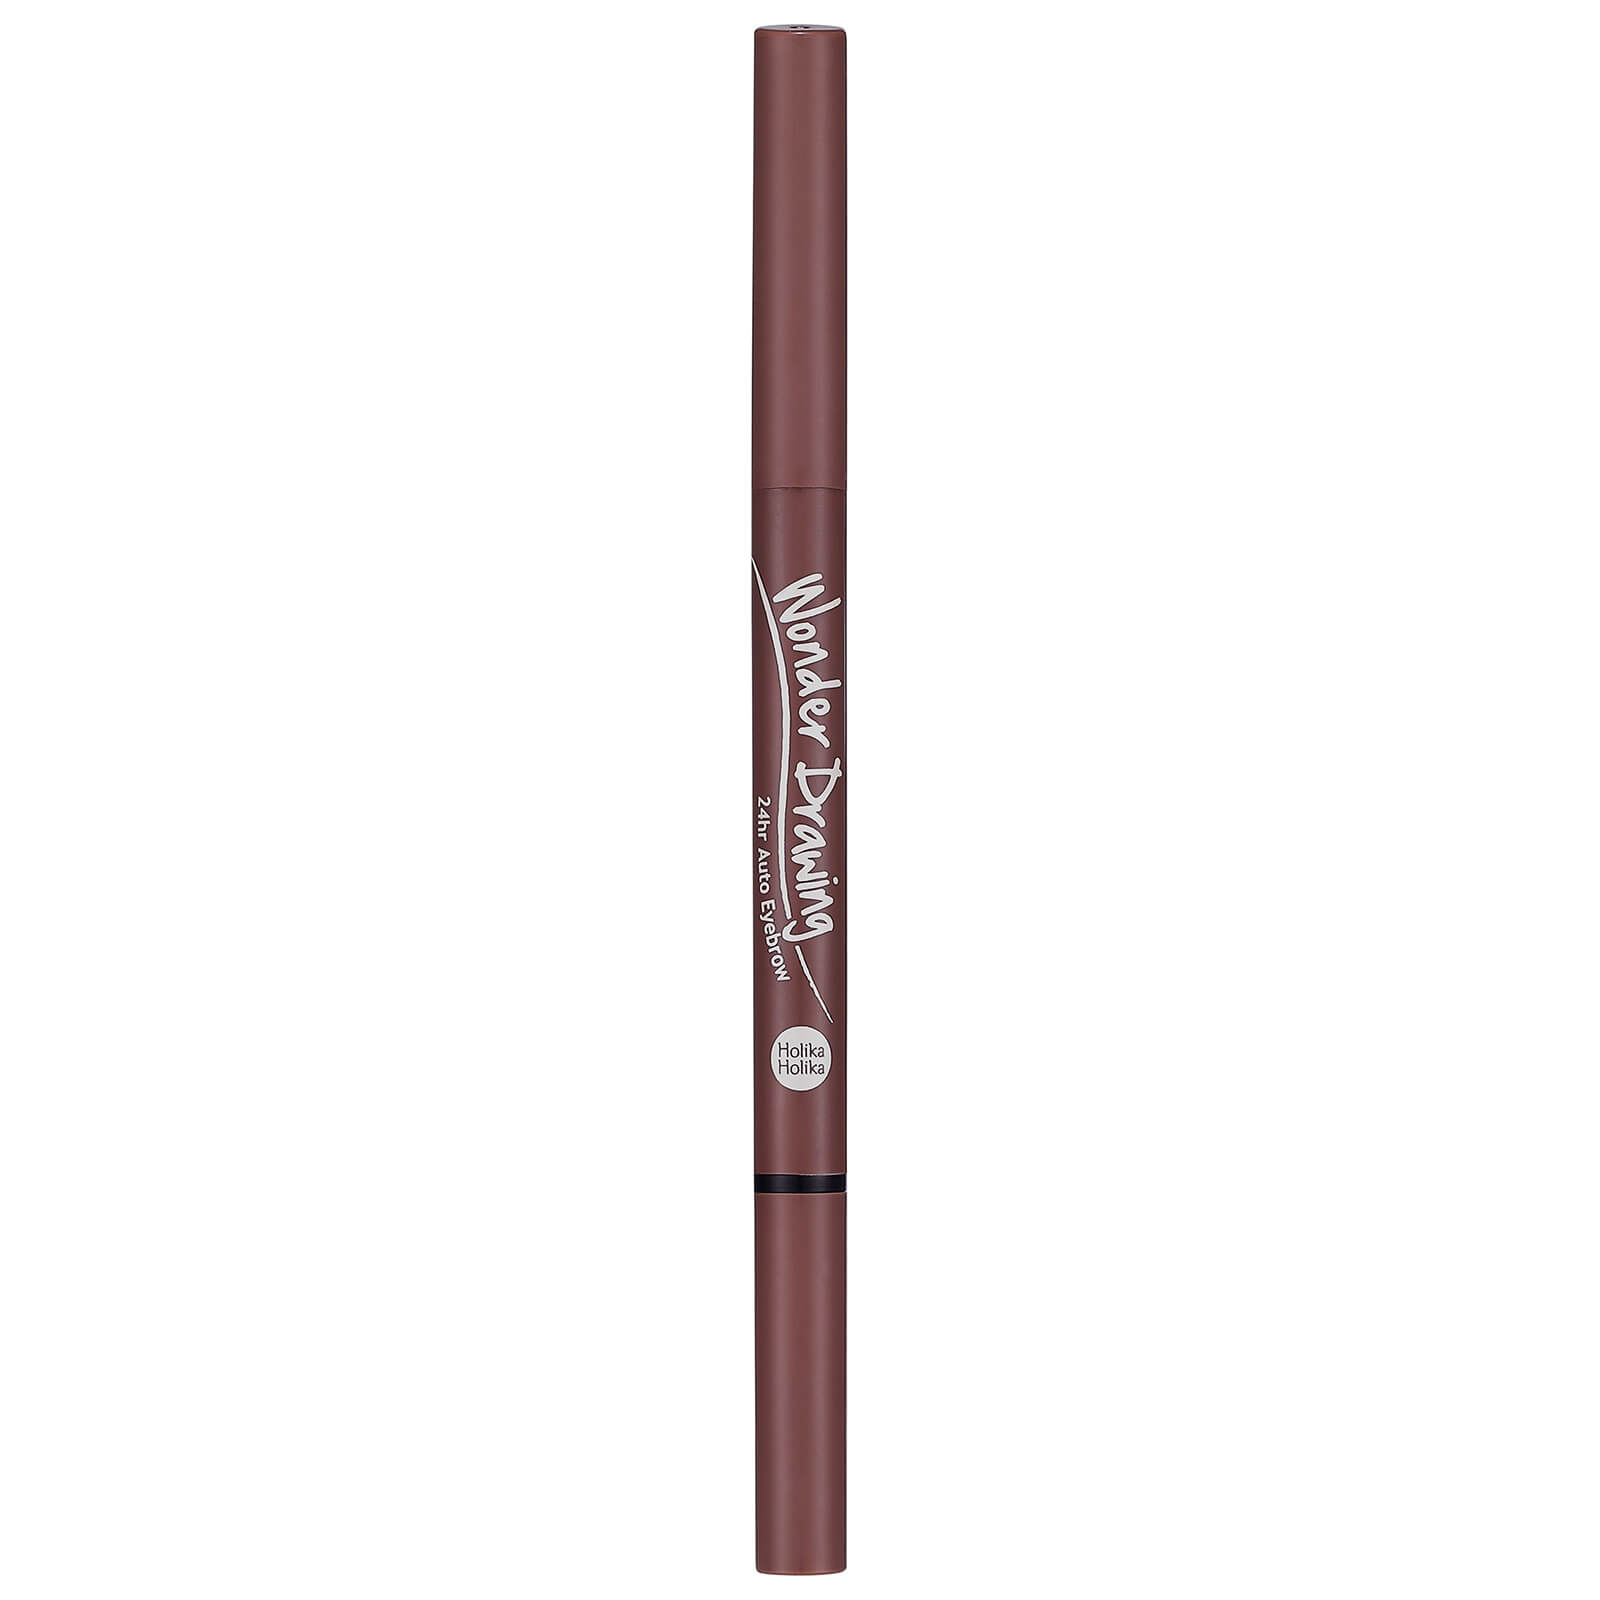 Holika Holika Wonder Drawing 24HR Auto Eyebrow Pencil 0.05g (Various Shades) - 04 Red Brown